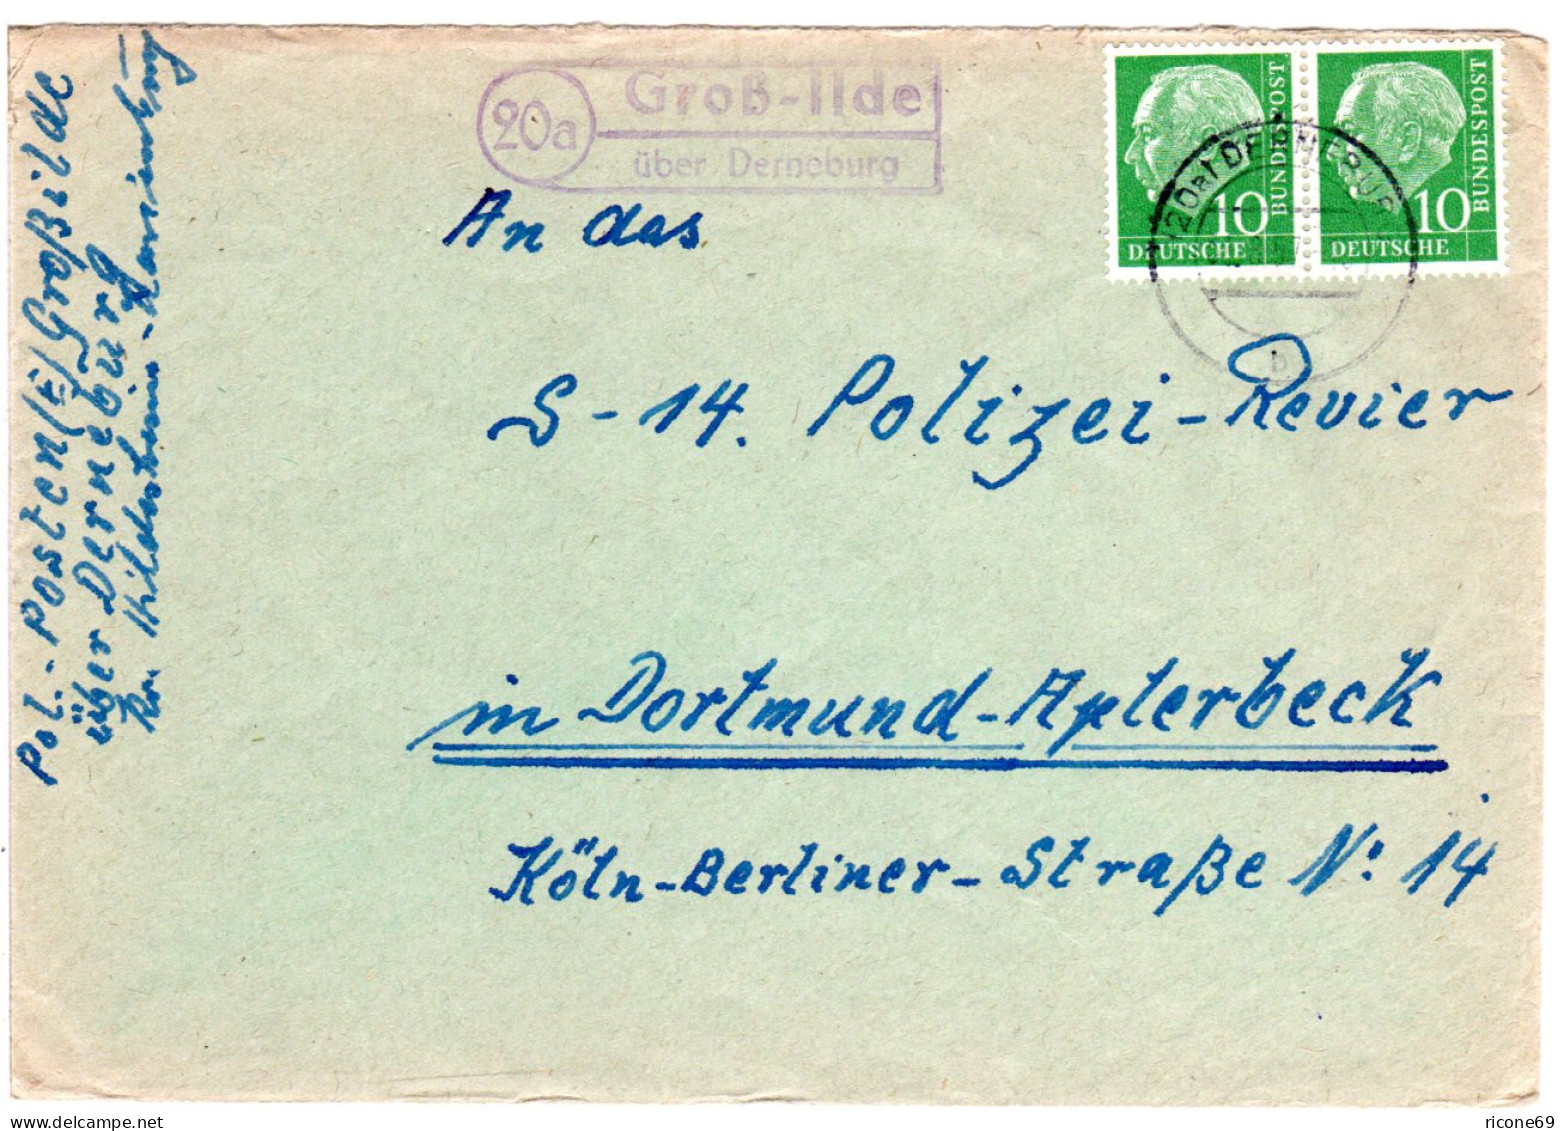 BRD 1957, Landpost Stpl. 20a GROSS-ILDE über Derneburg Auf Brief M. 2x10 Pf. - Briefe U. Dokumente